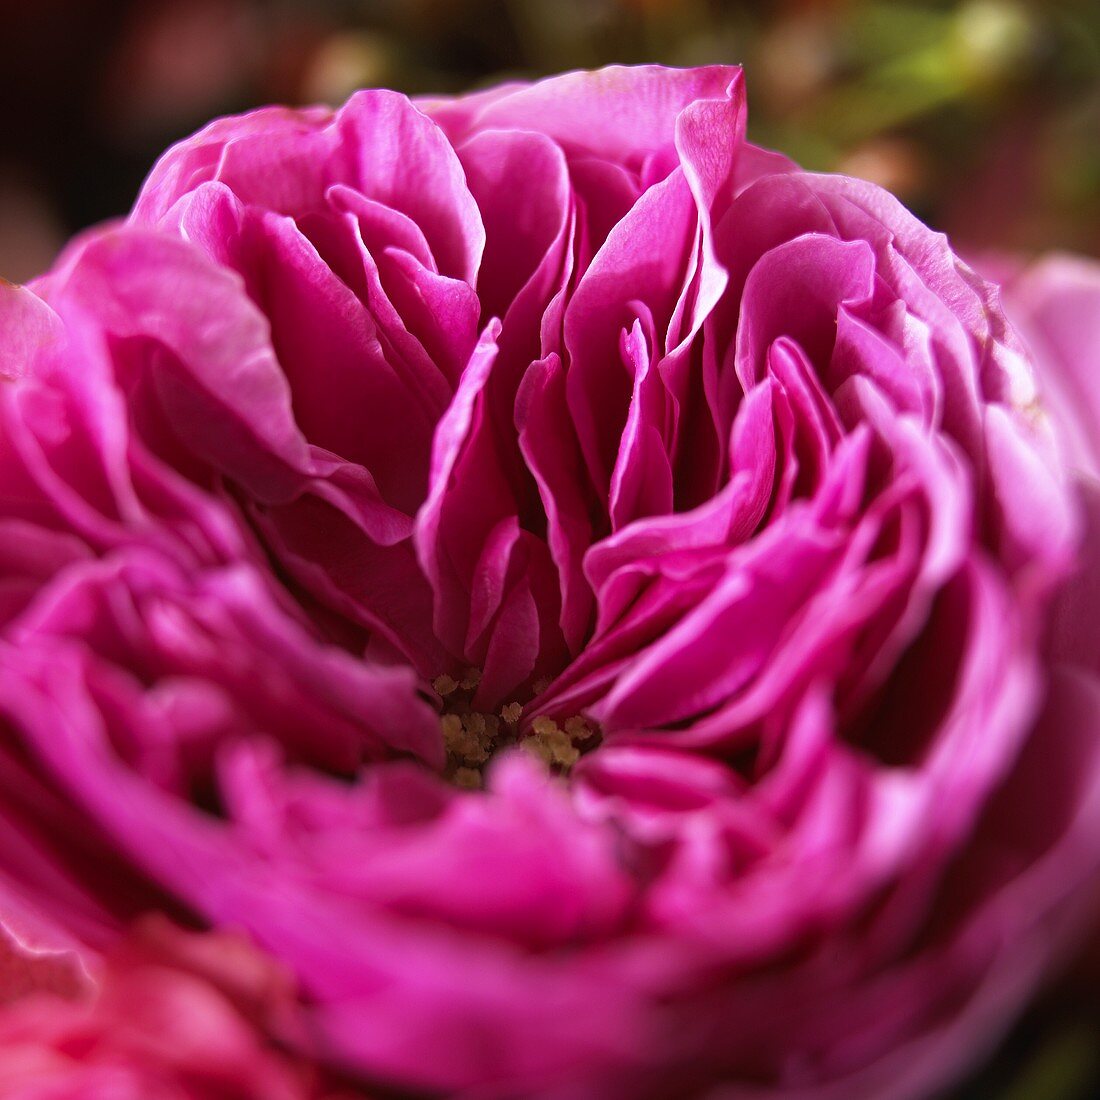 Pink rose (close-up)